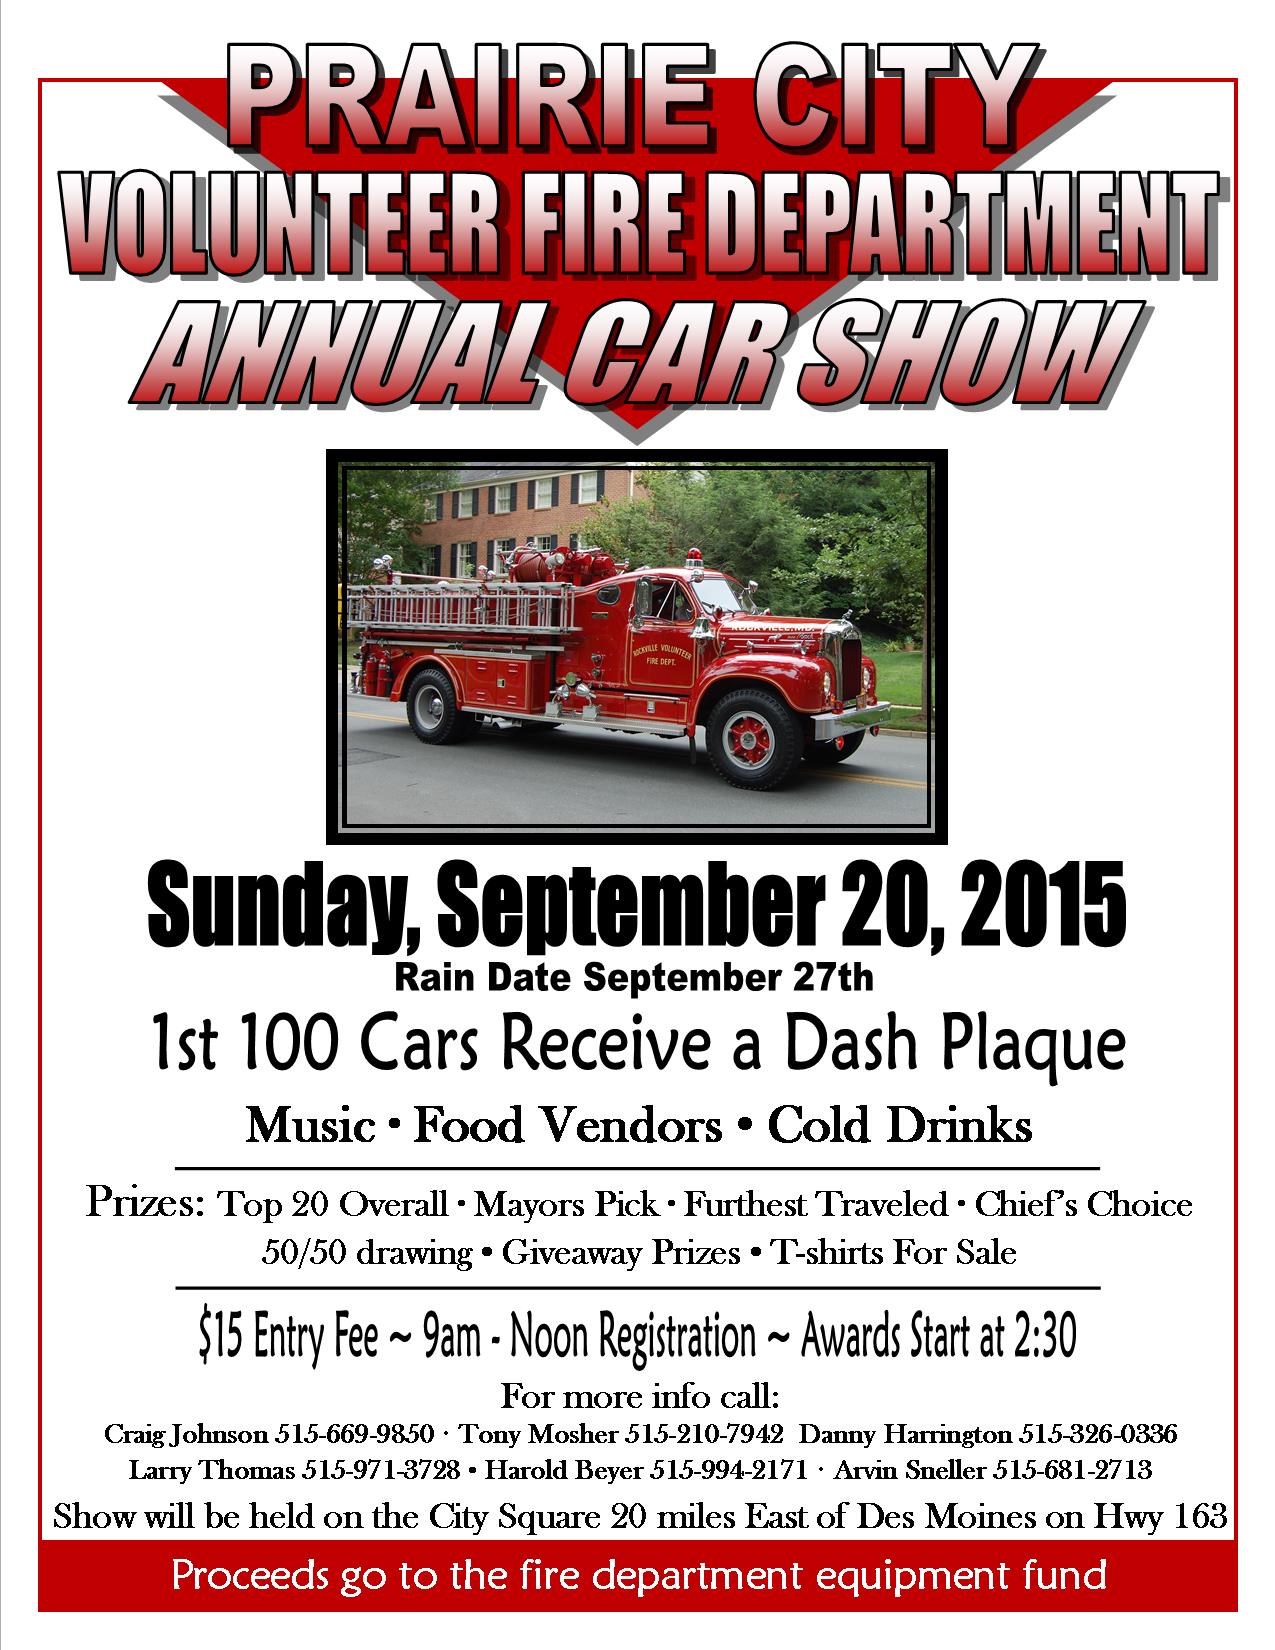 Prairie City Fire Department Annual Car Show